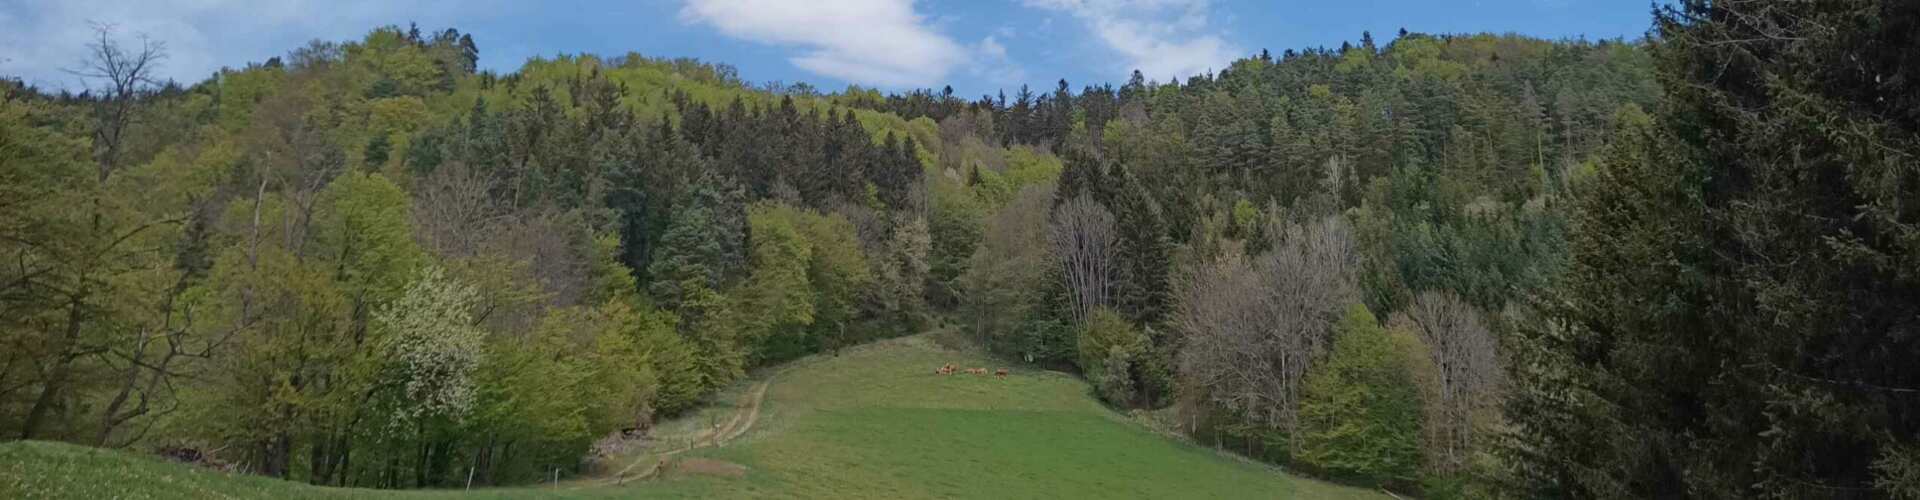 Berglandschaft mit Bäumen und Kühen in der Ferne